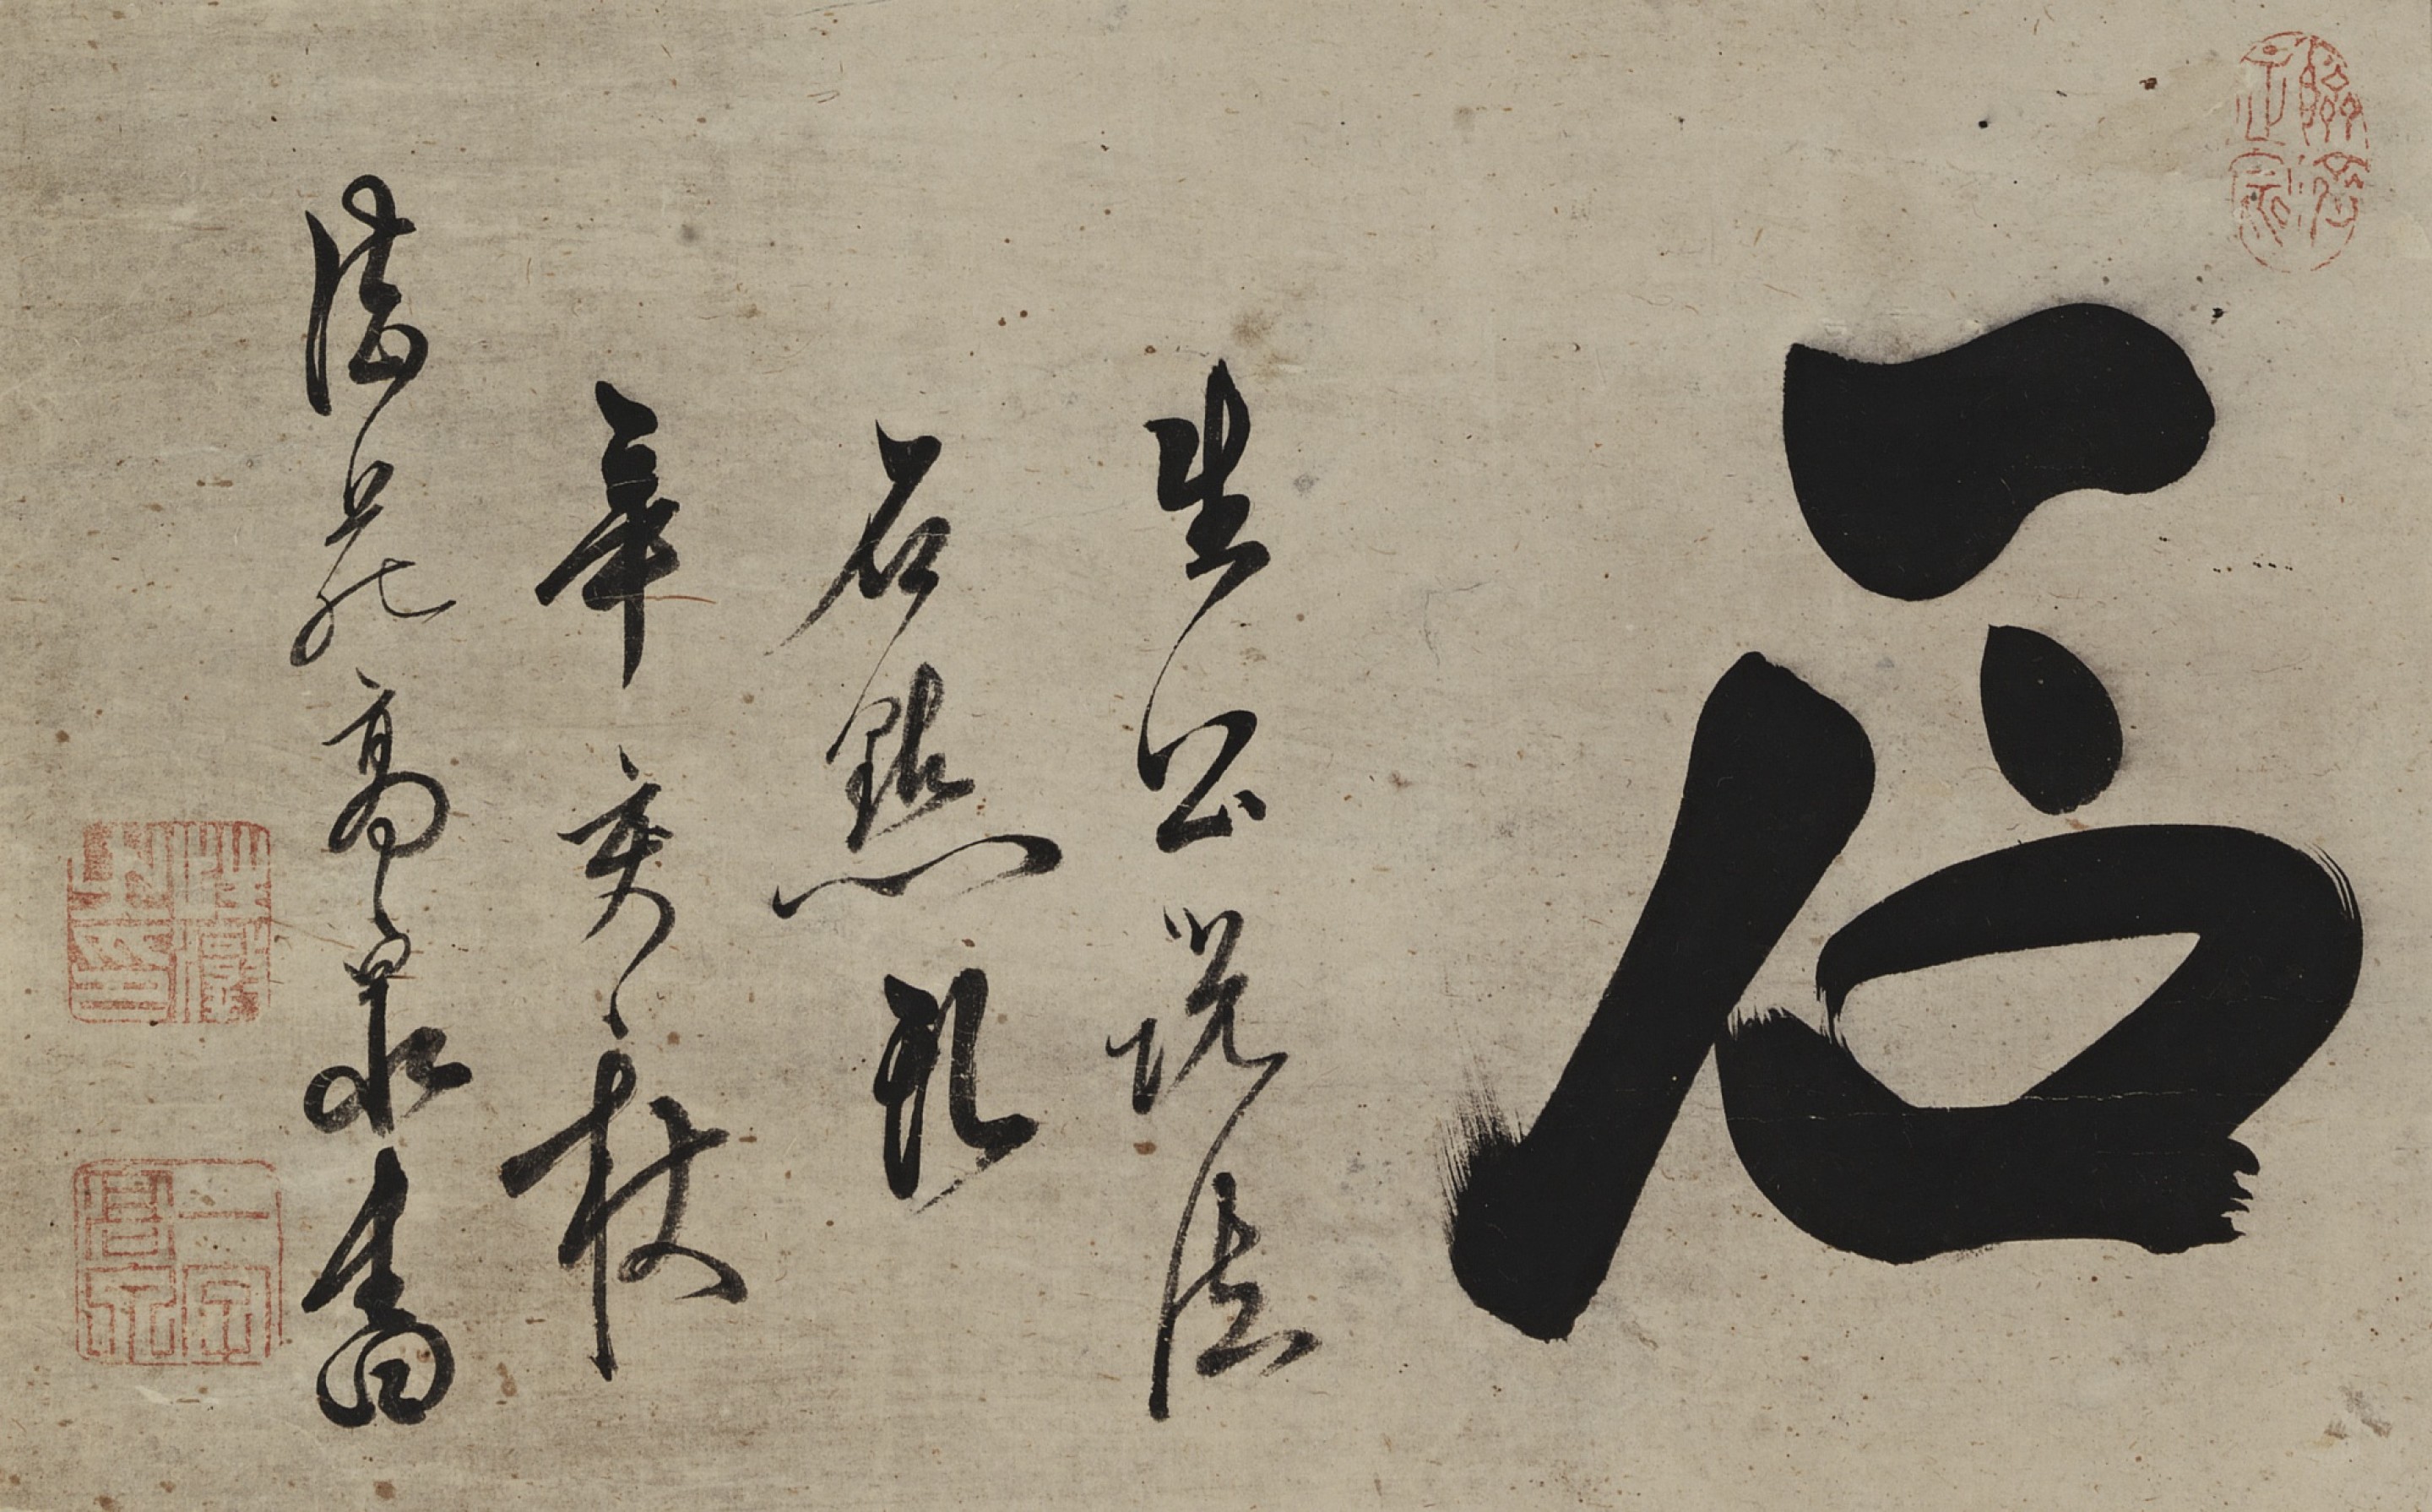 Kosen Shoton, Calligraphy “Ishi”, Sotheby’s 